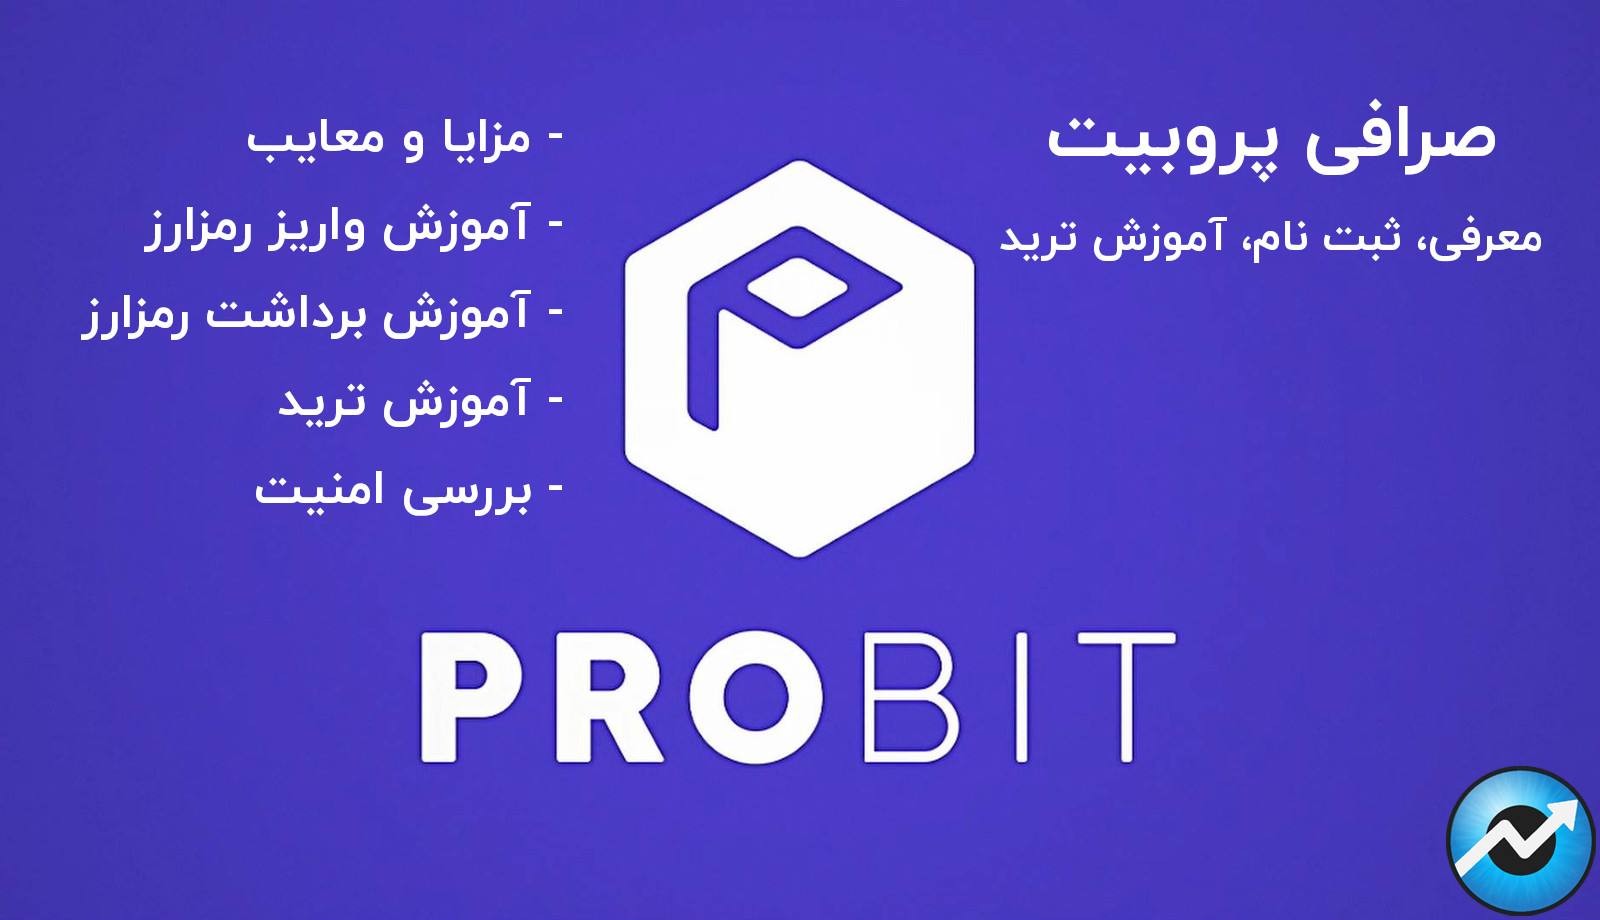 صرافی پروبیت ProBit آموزش و بررسی و معرفی